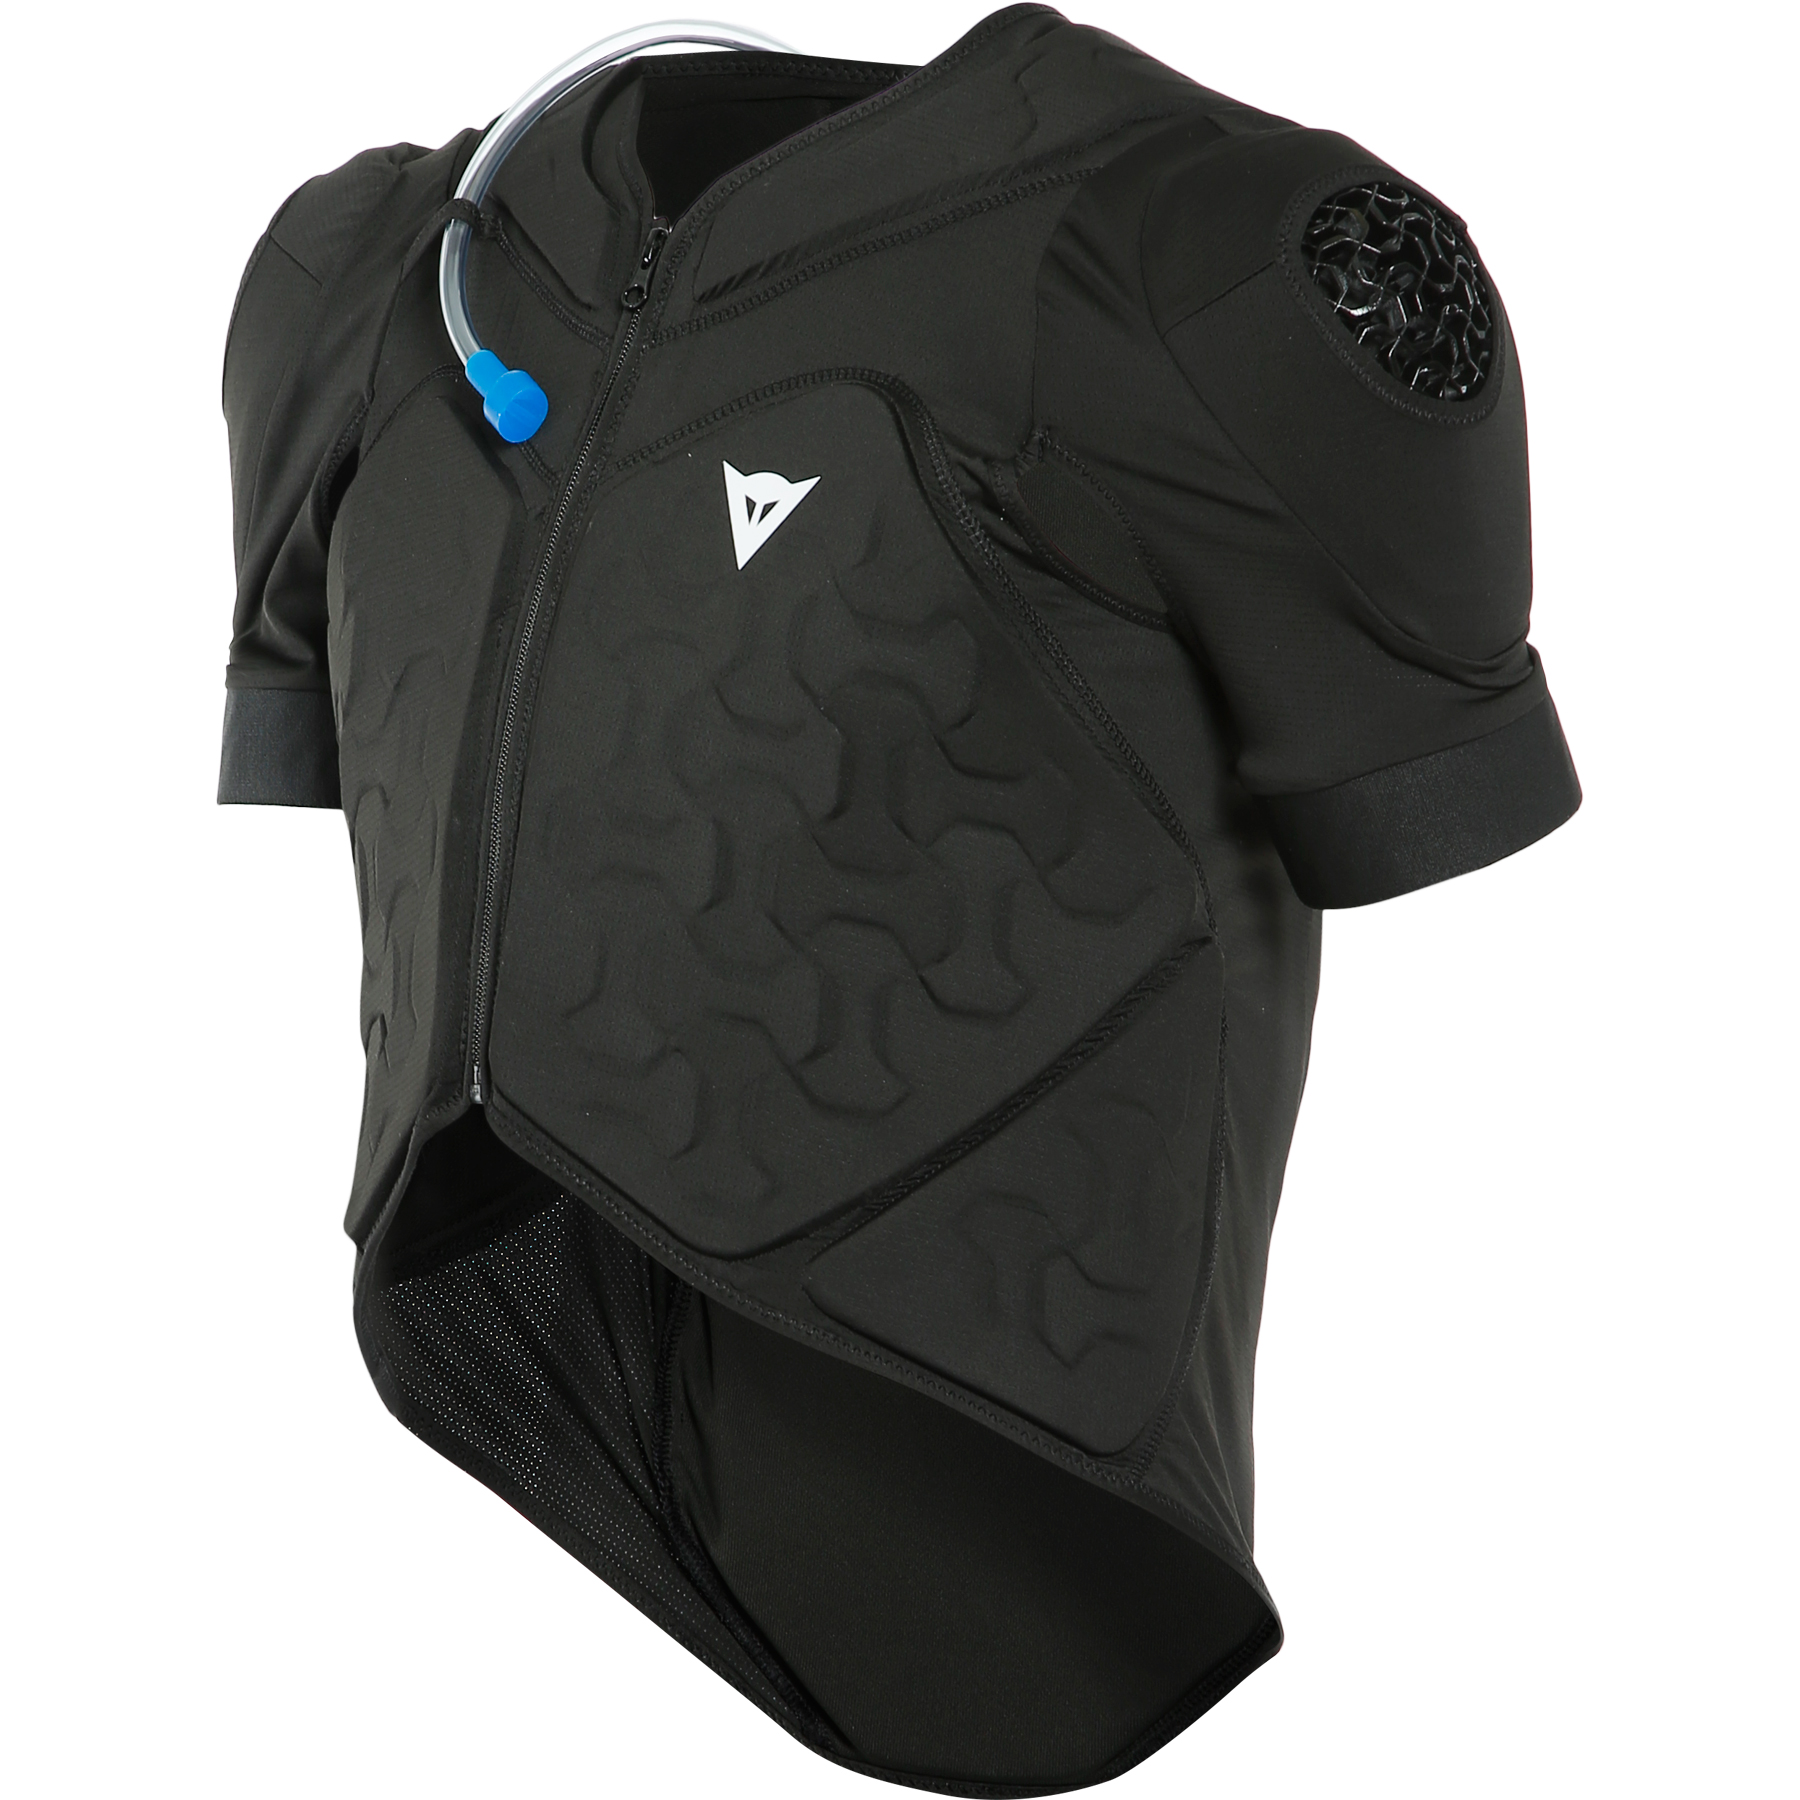 Productfoto van Dainese Rival Pro Protector Vest - zwart